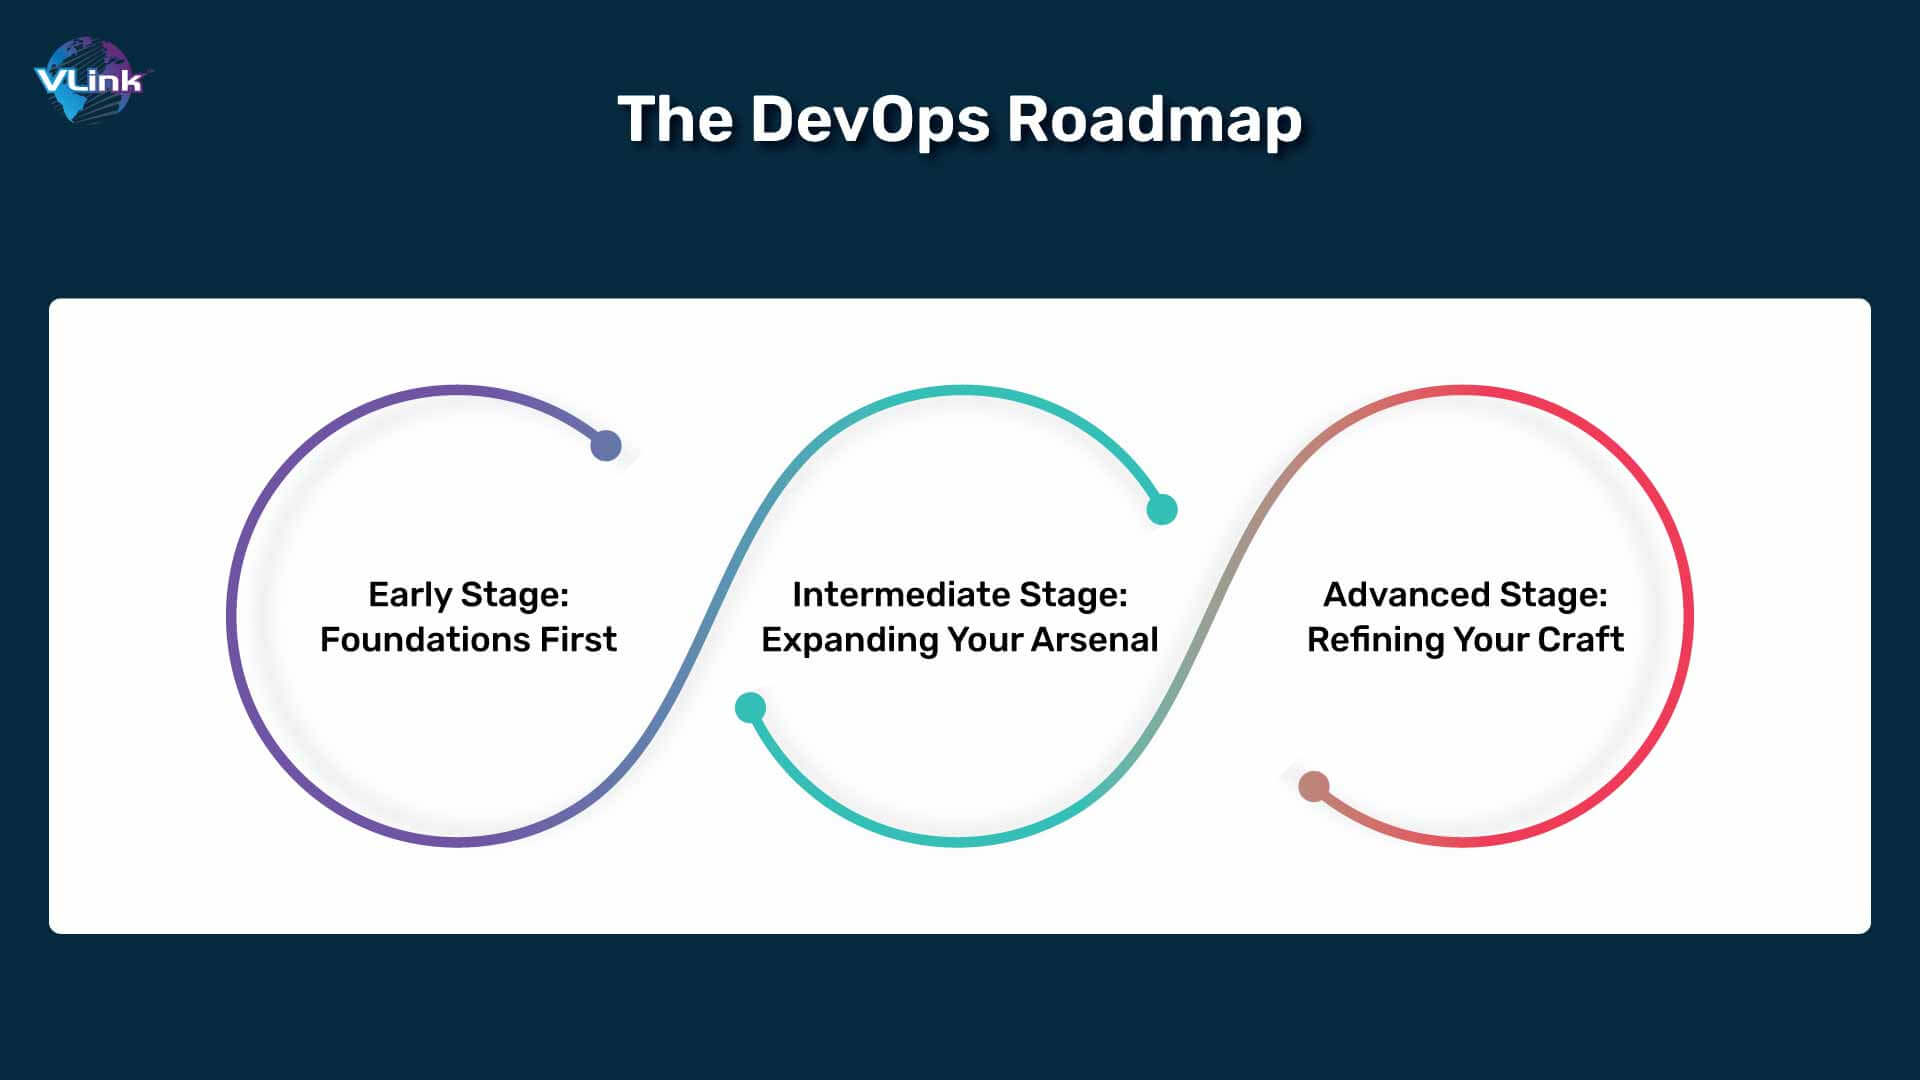 The DevOps Roadmap